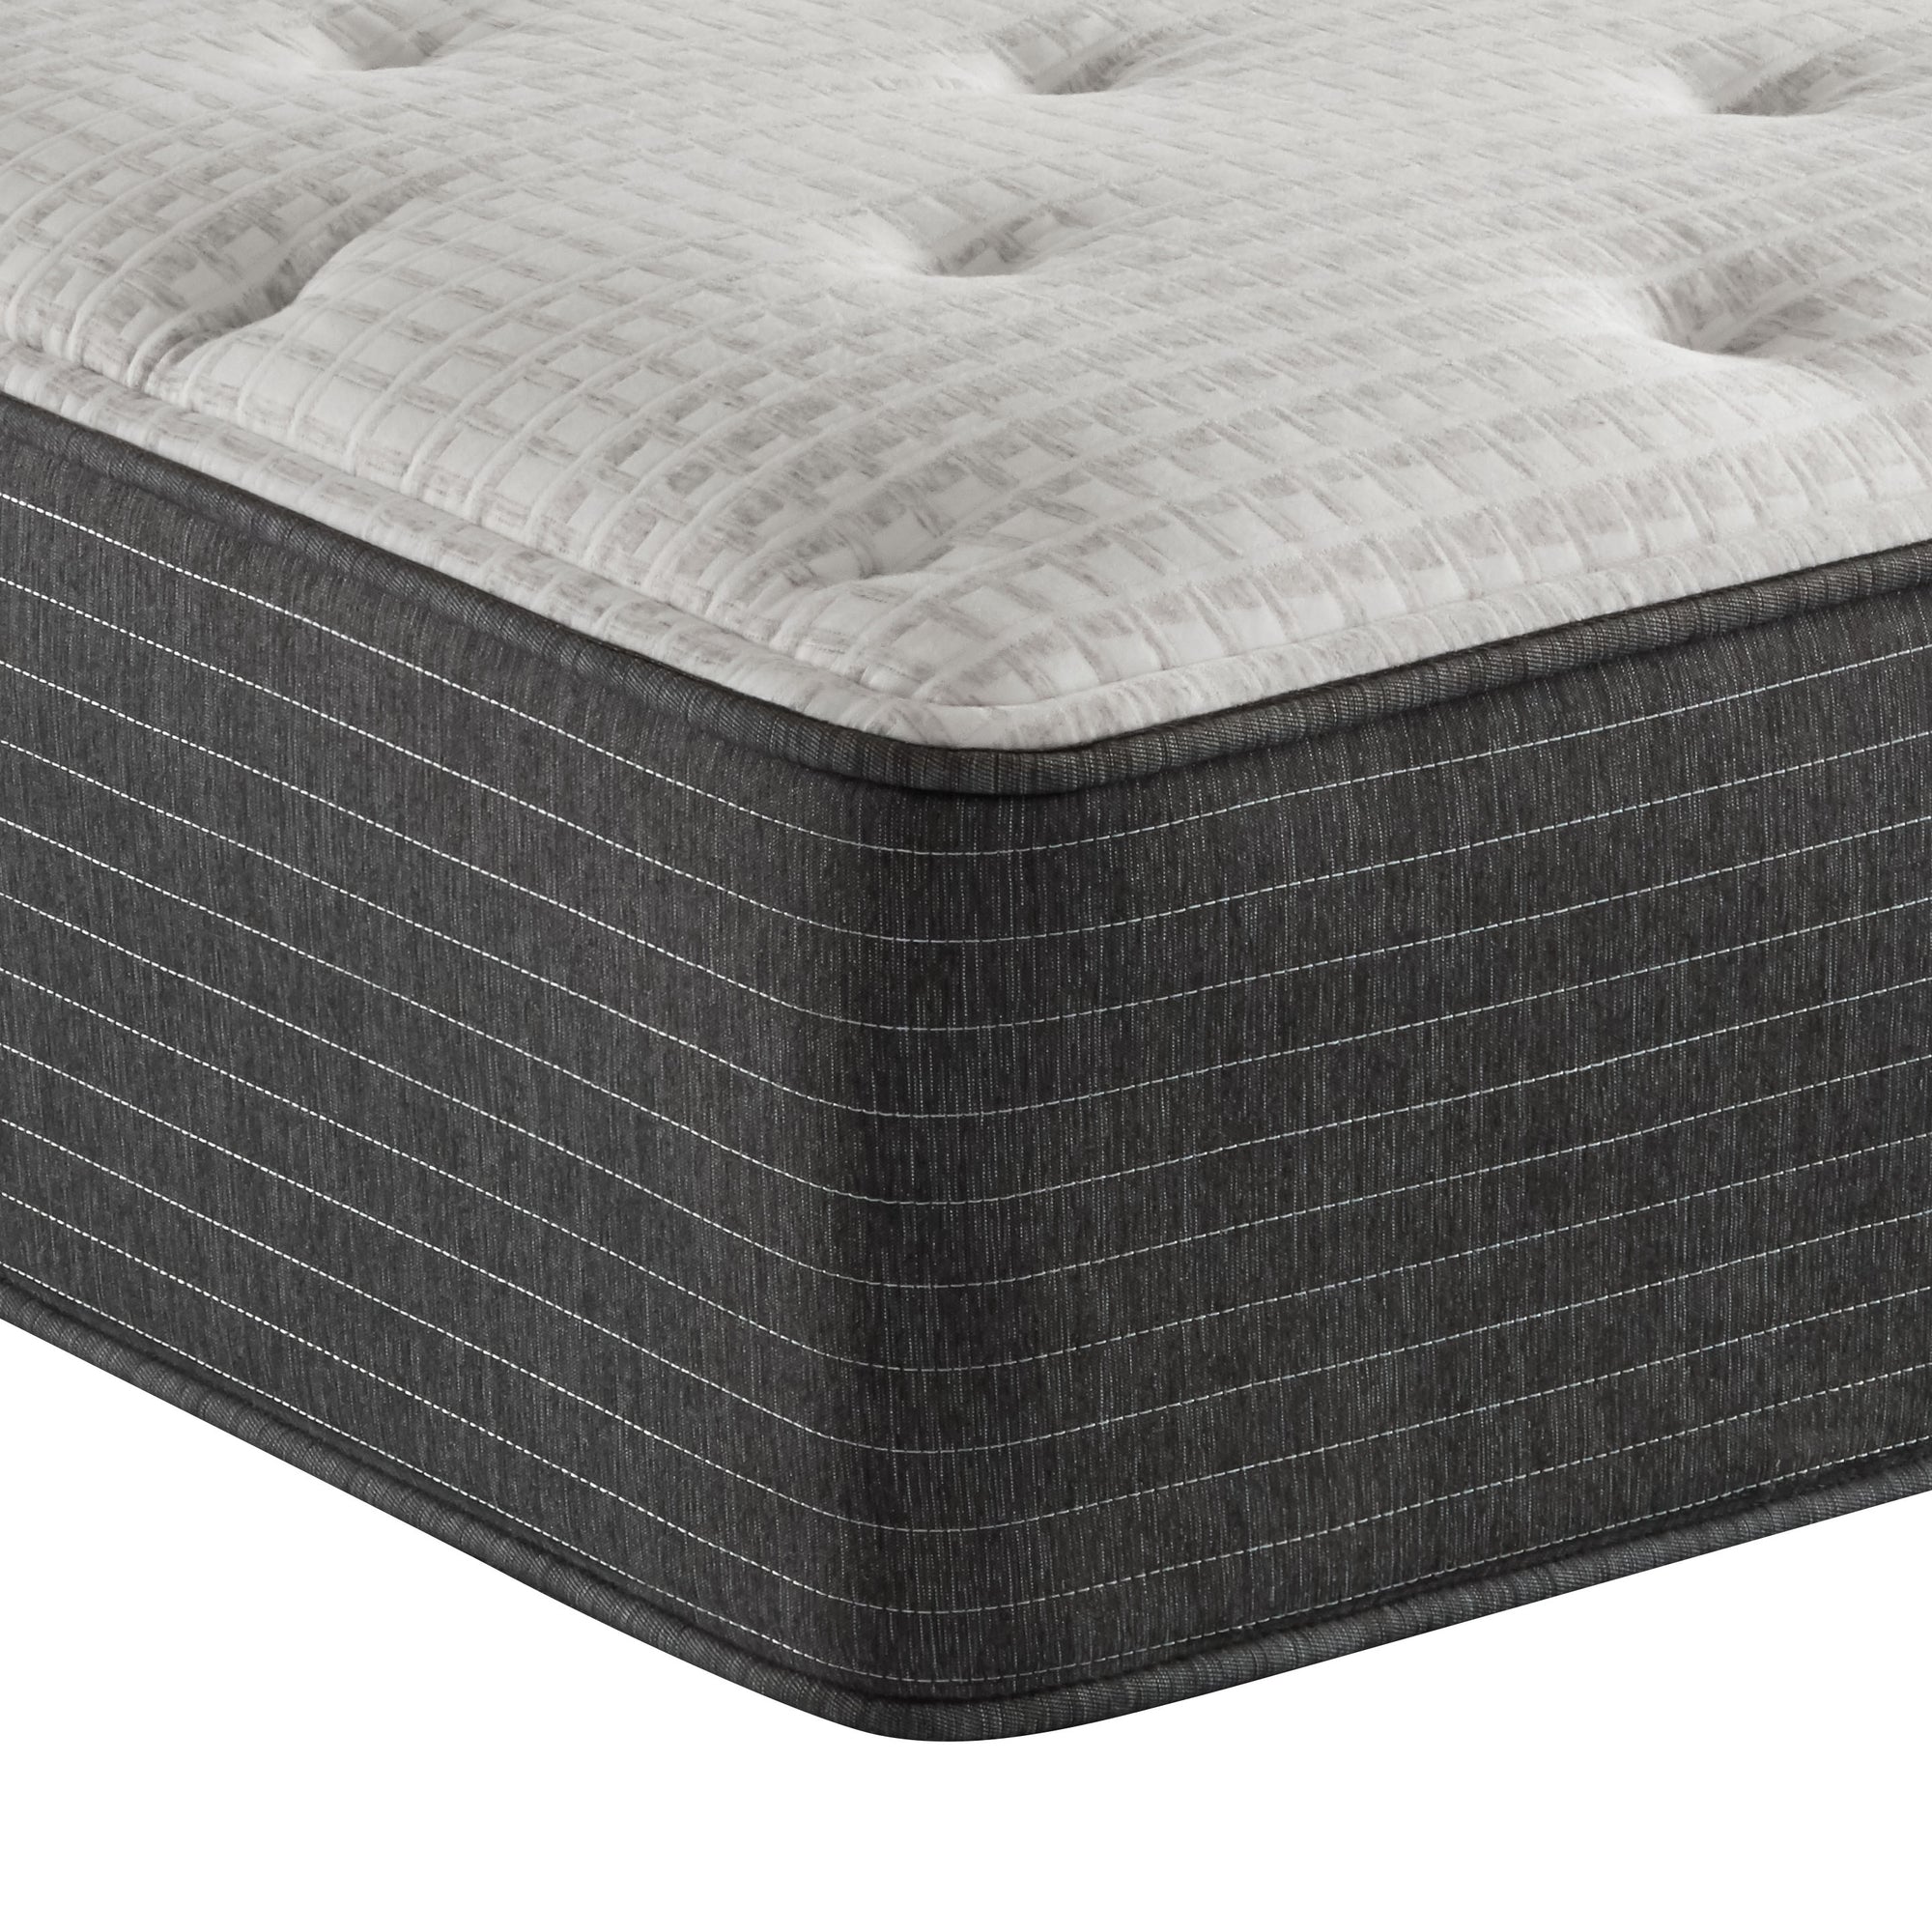 Corner view of the Beautyrest Silver BRS900-C Medium mattress